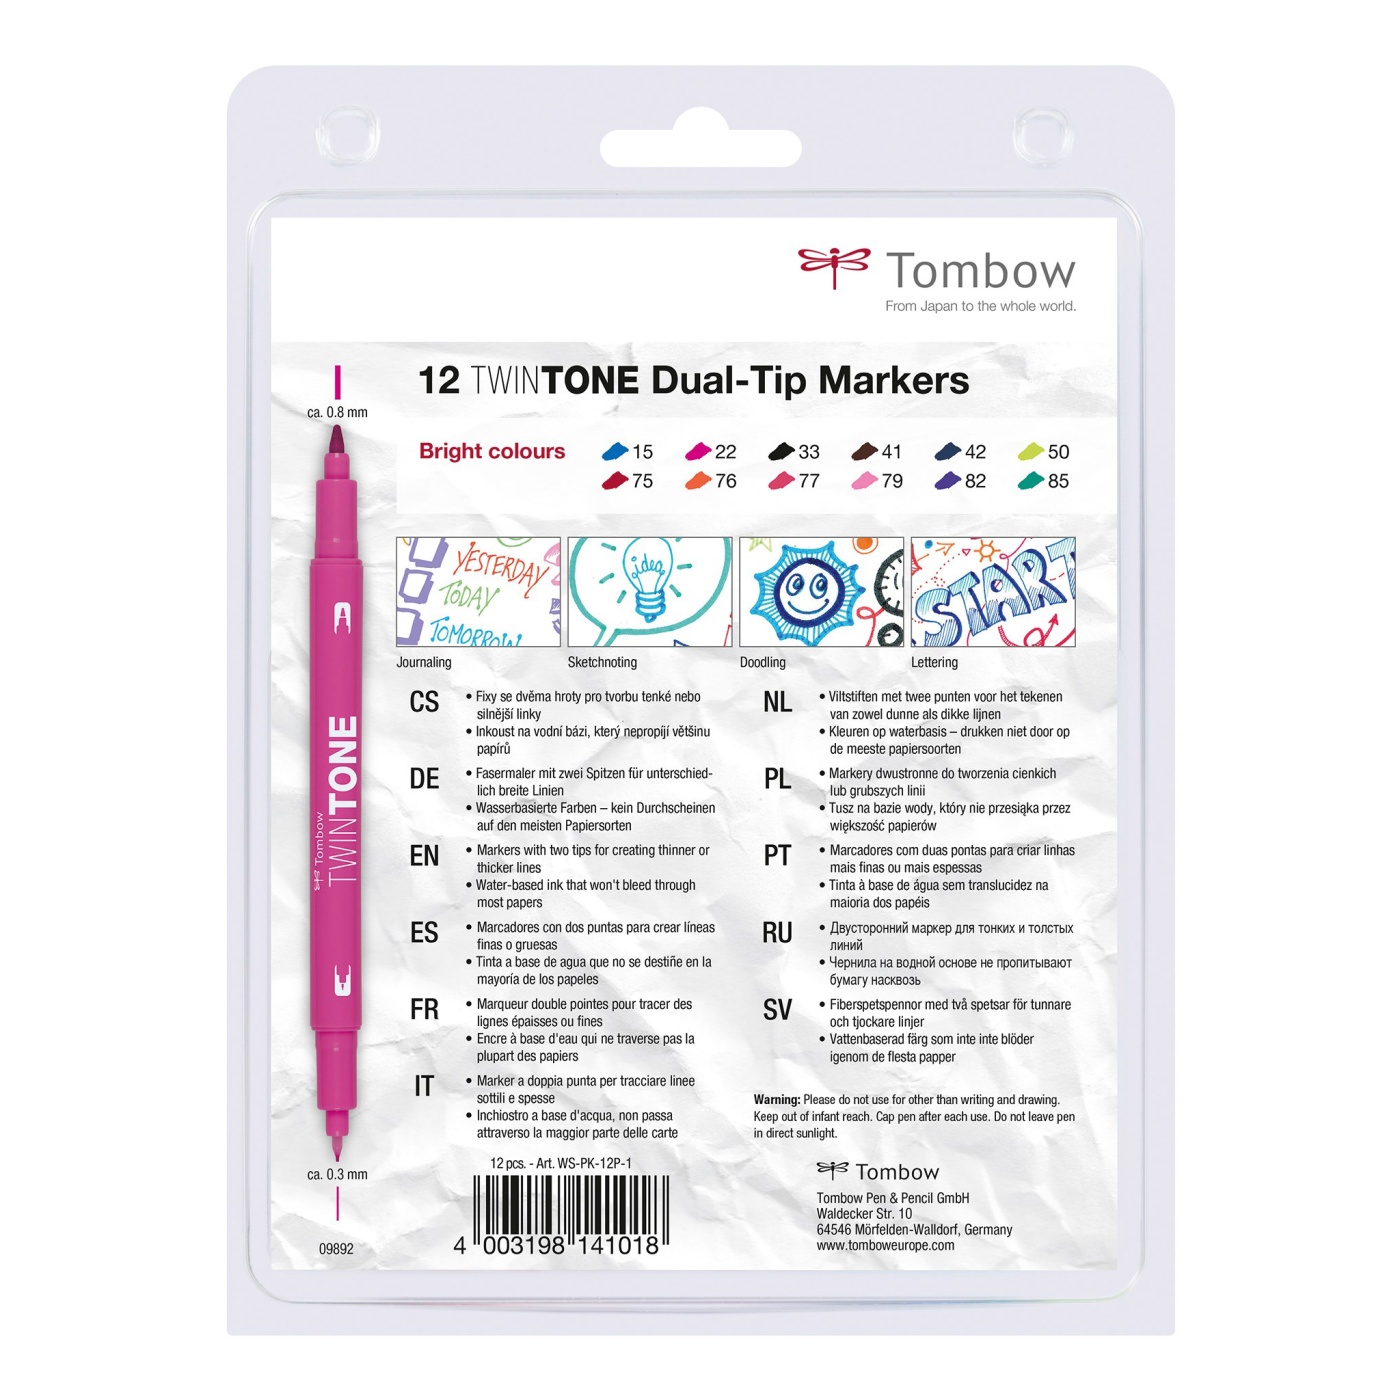 TwinTone Marker Bright 12-pakke i gruppen Penner / Kunstnerpenner / Tusjpenner hos Pen Store (101103)